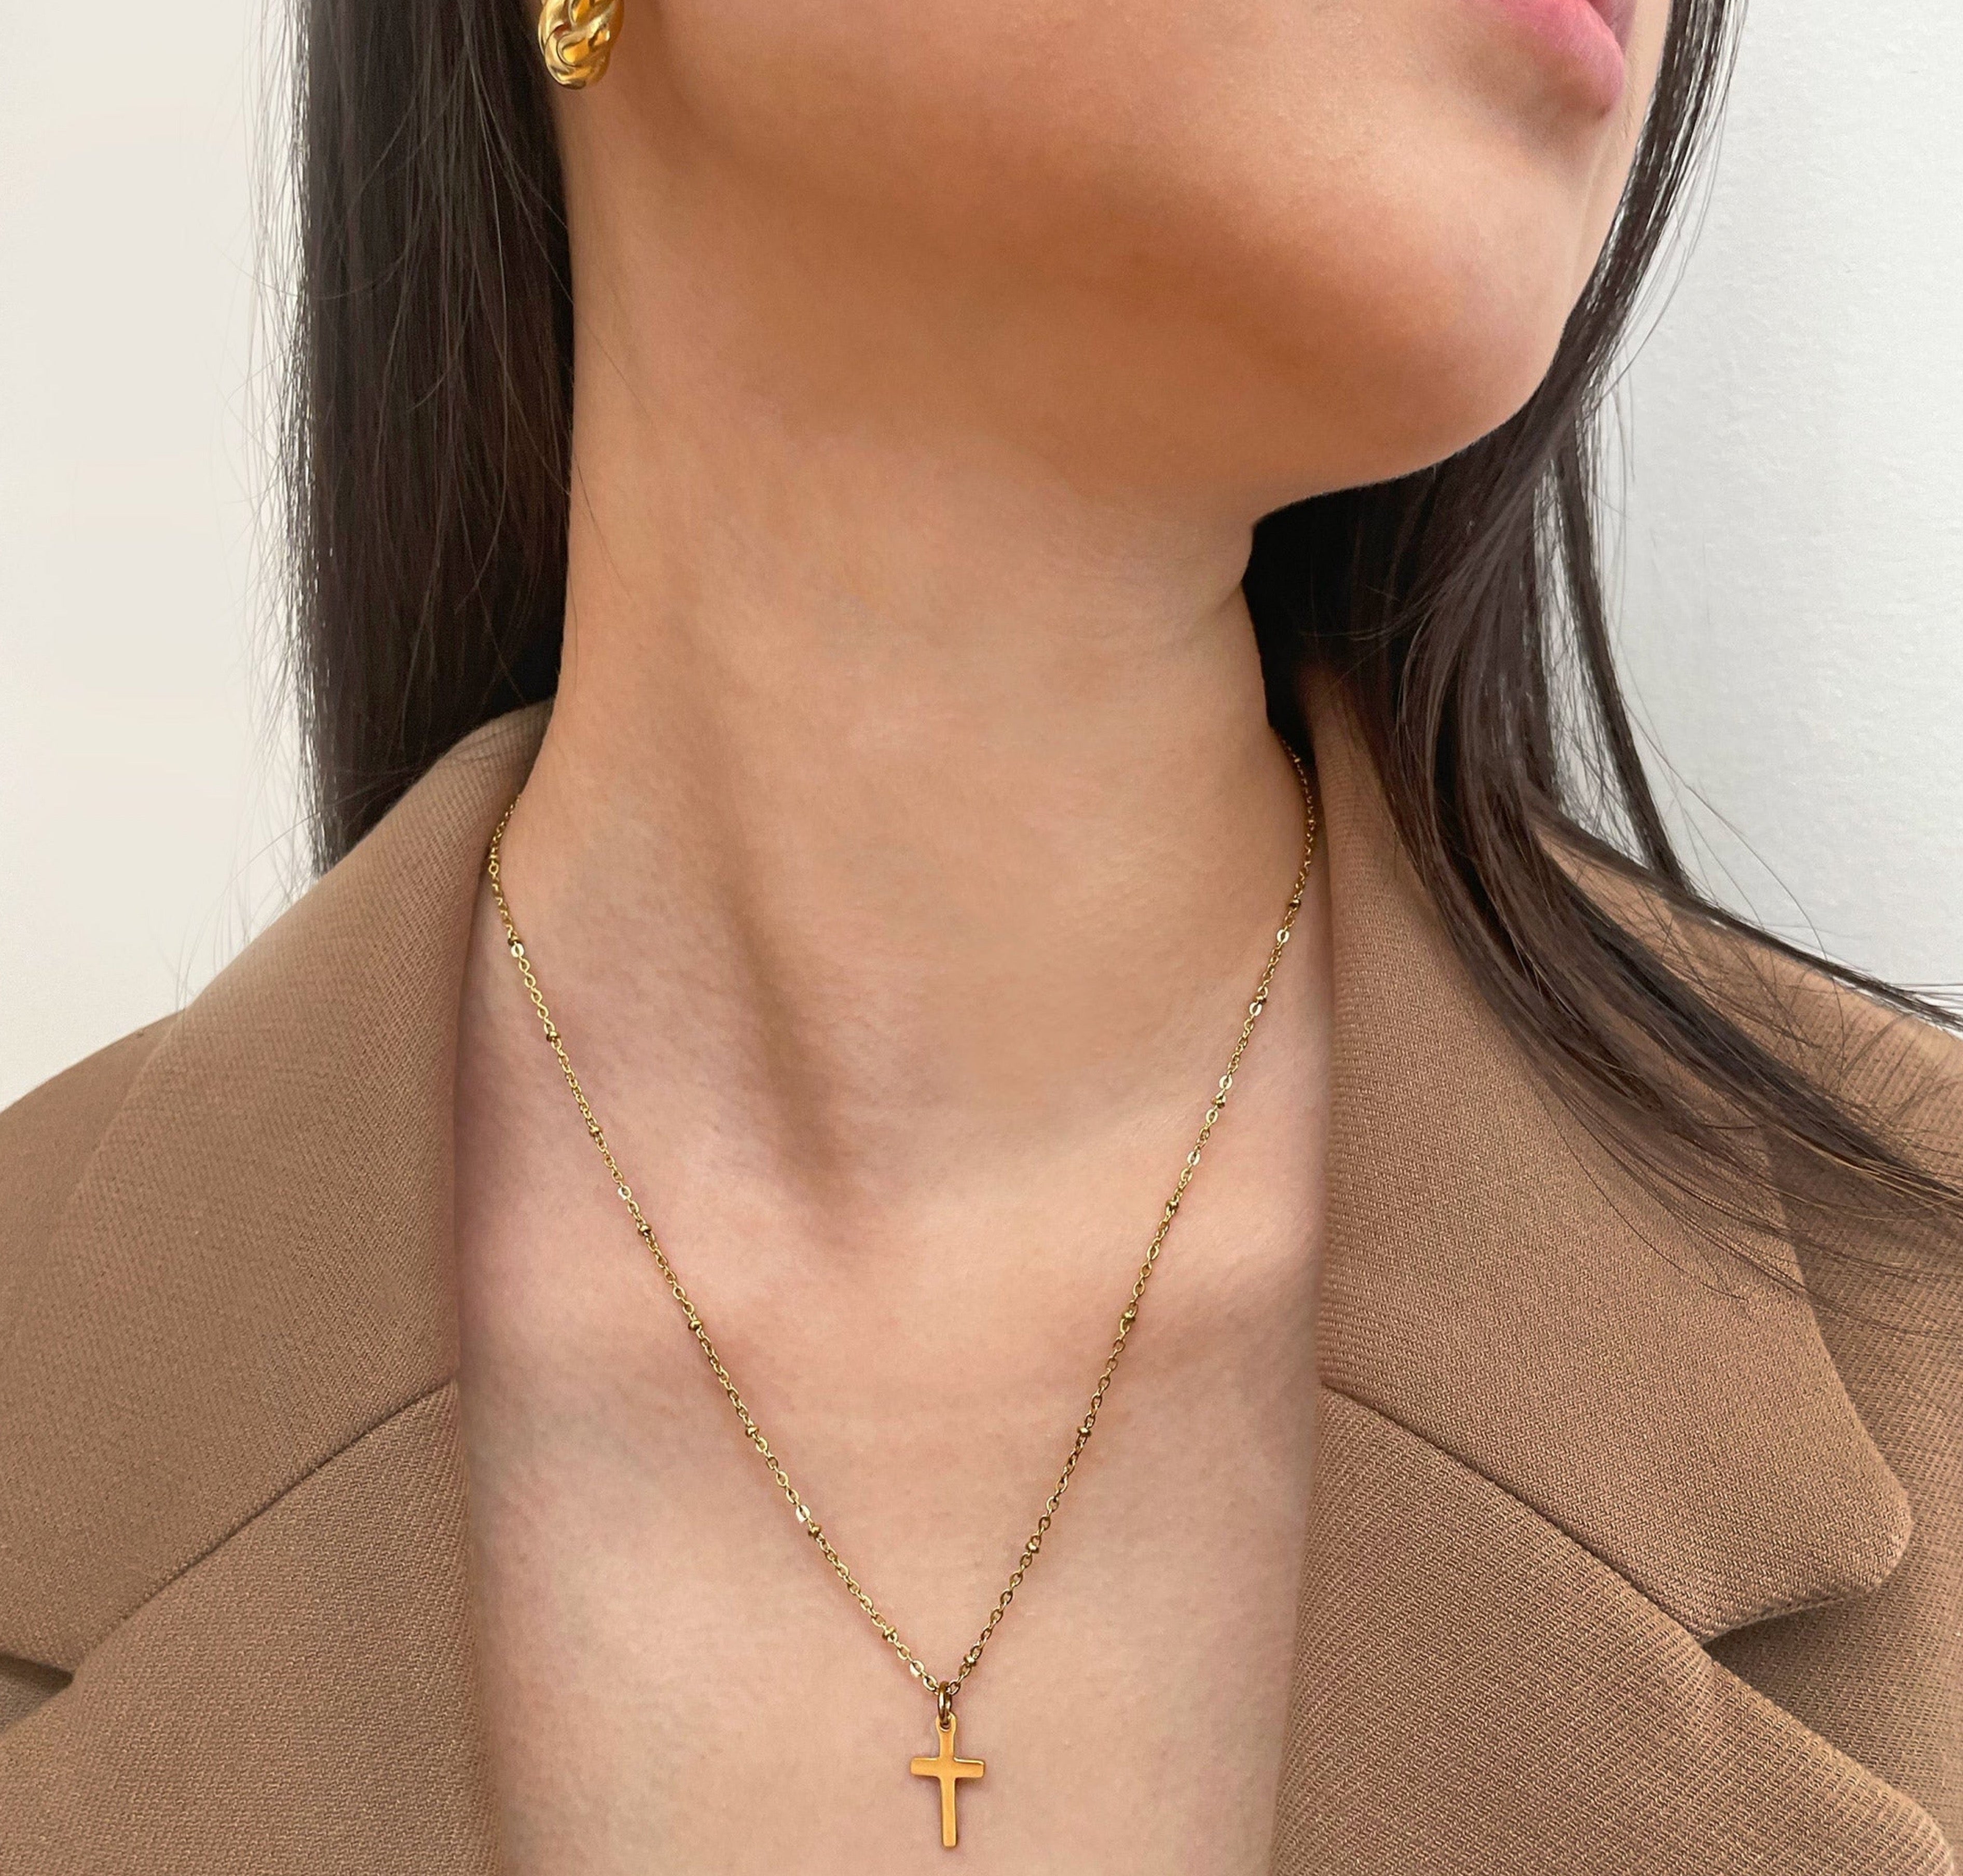 gold dainty cross necklace waterproof jewelry